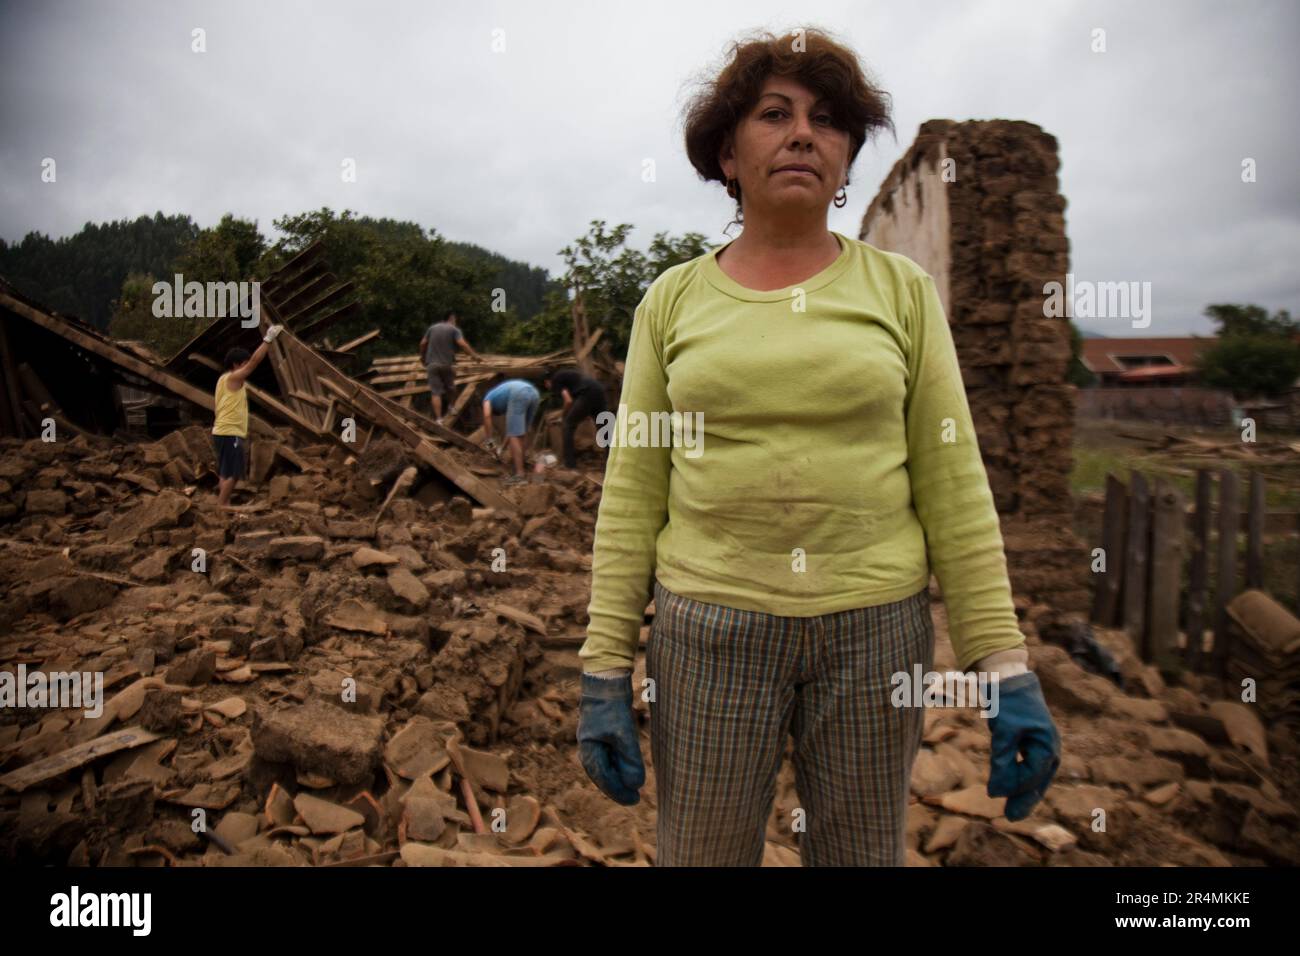 Porträt einer einheimischen Frau vor den Trümmern eines eingestürzten Gebäudes, das bei dem Erdbeben in Chile Anfang 2010 zerstört wurde. Stockfoto